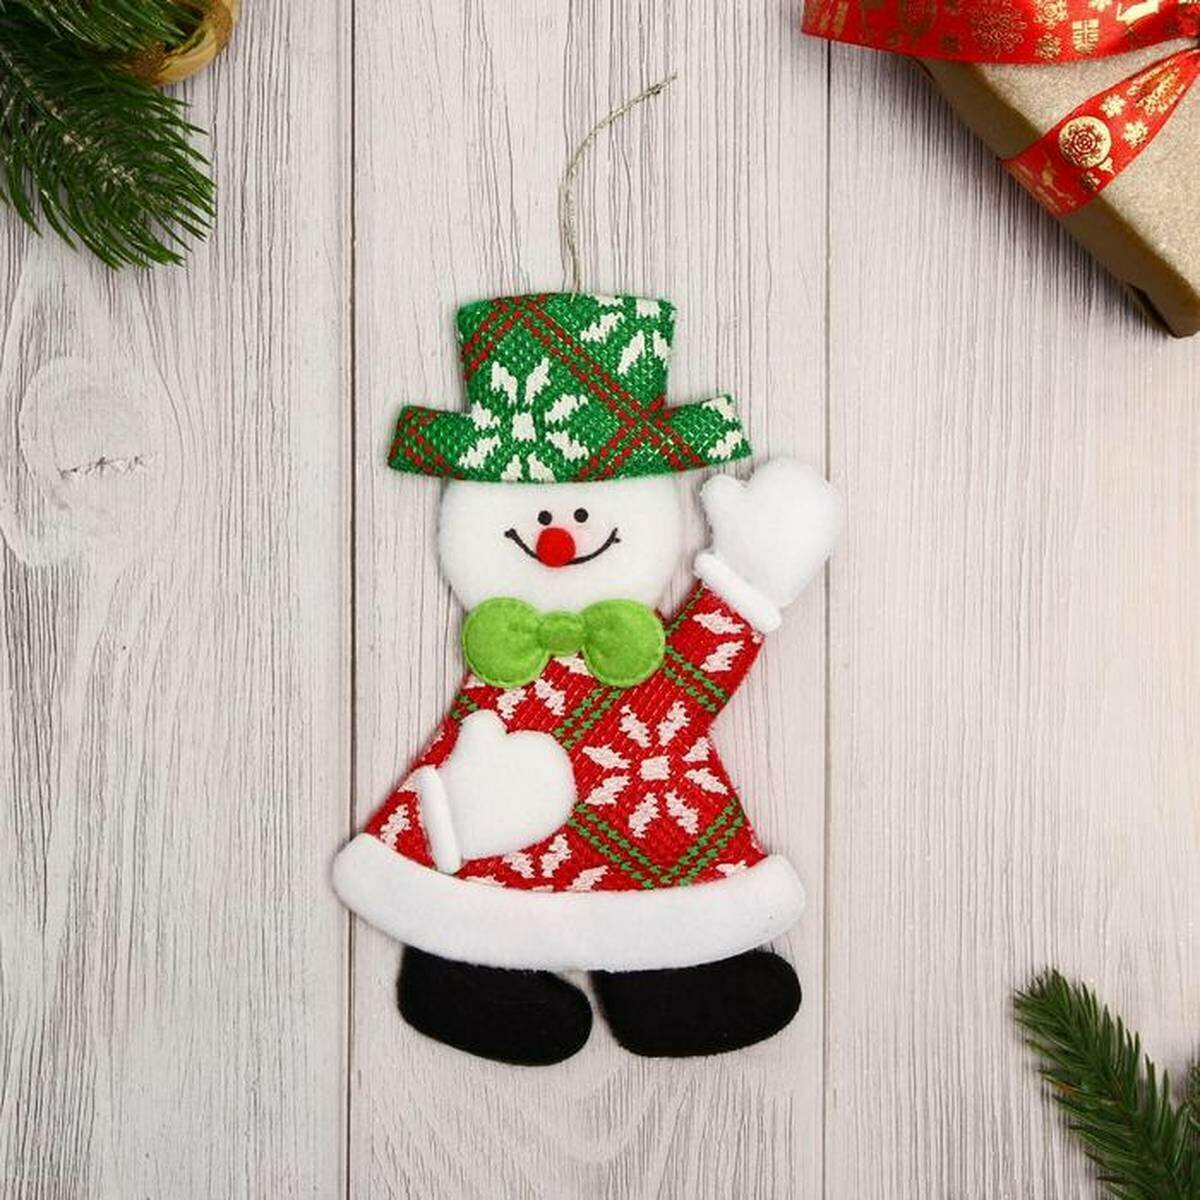 Ёлочная игрушка Зимнее волшебство - Снеговик, 16 см, цвет зеленый/красный, текстиль, 1 шт